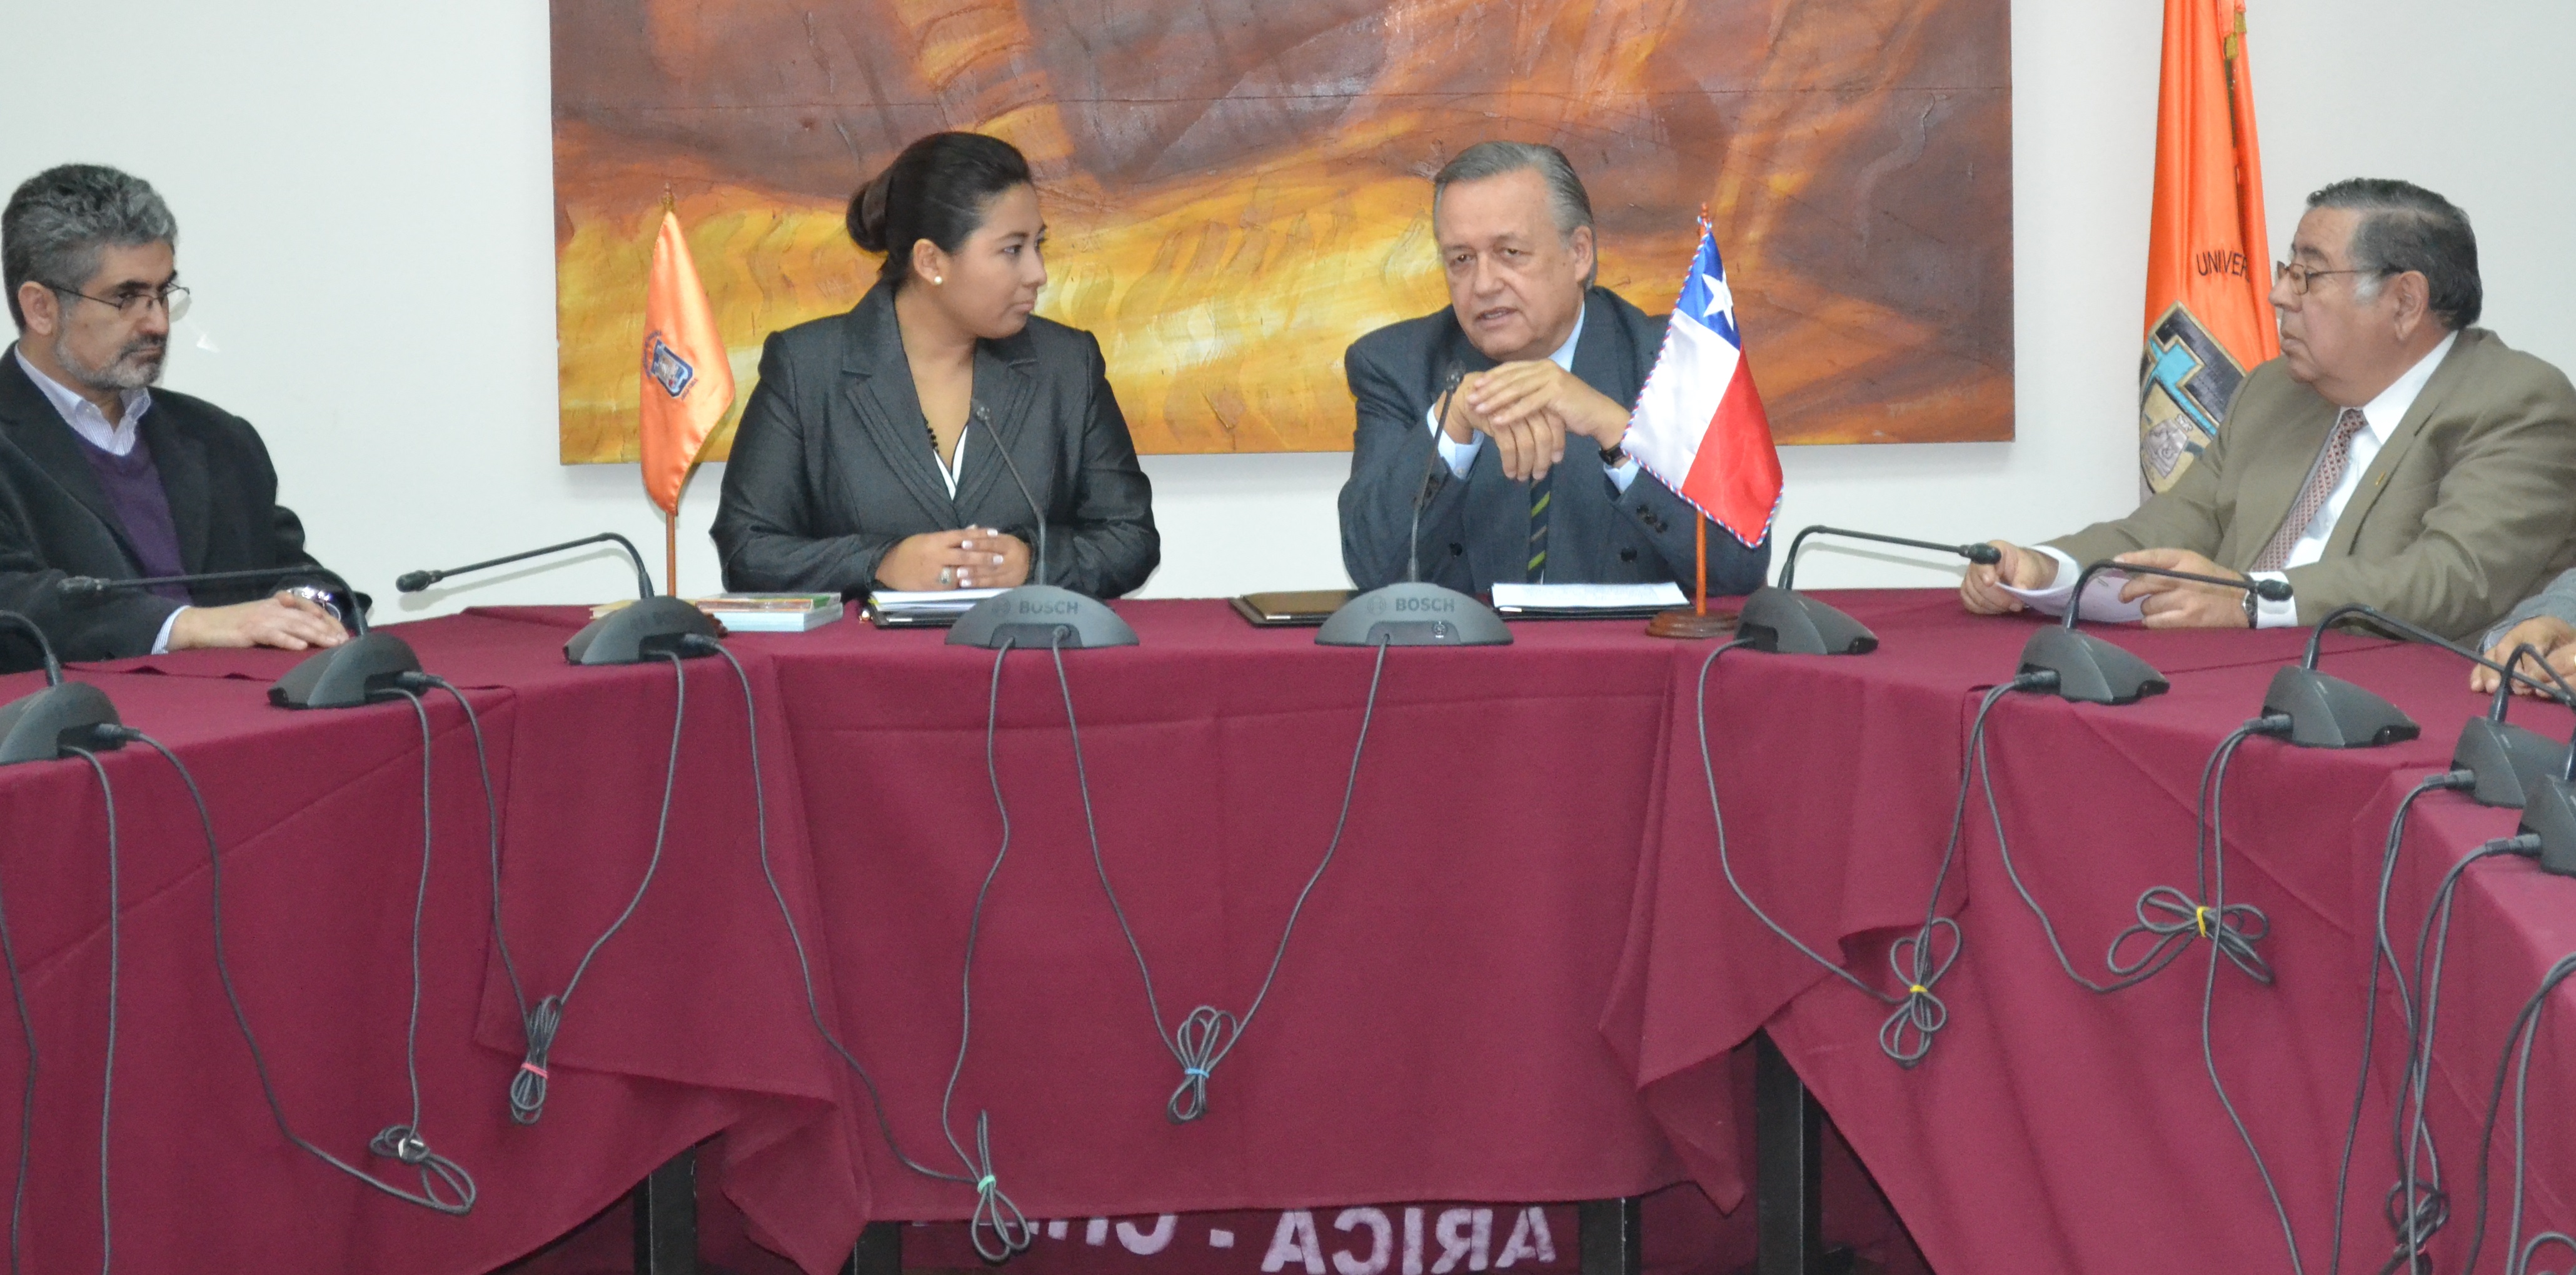 U. de Tarapacá y Consejo Nacional de Televisión generan alianza de cooperación mutua